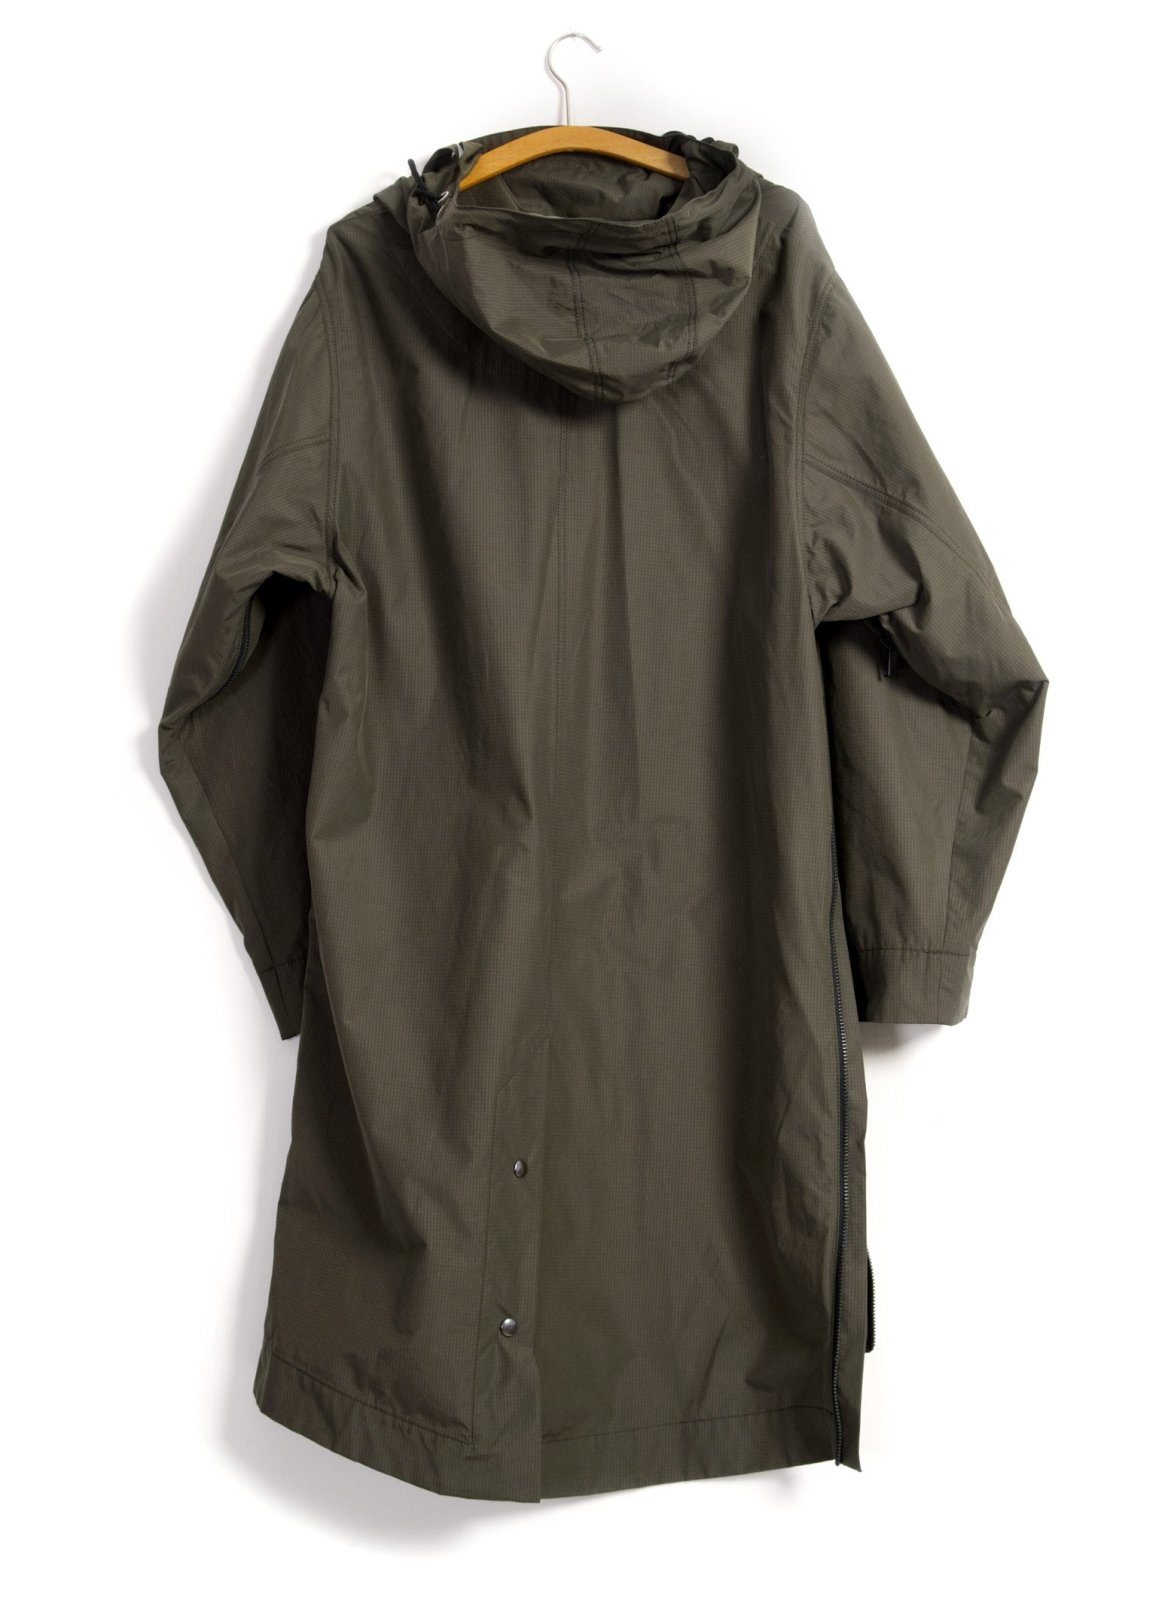 ROALD | Long 2 Zipper Spacious Anorak | Tech Army | €450 -HANSEN Garments- HANSEN Garments